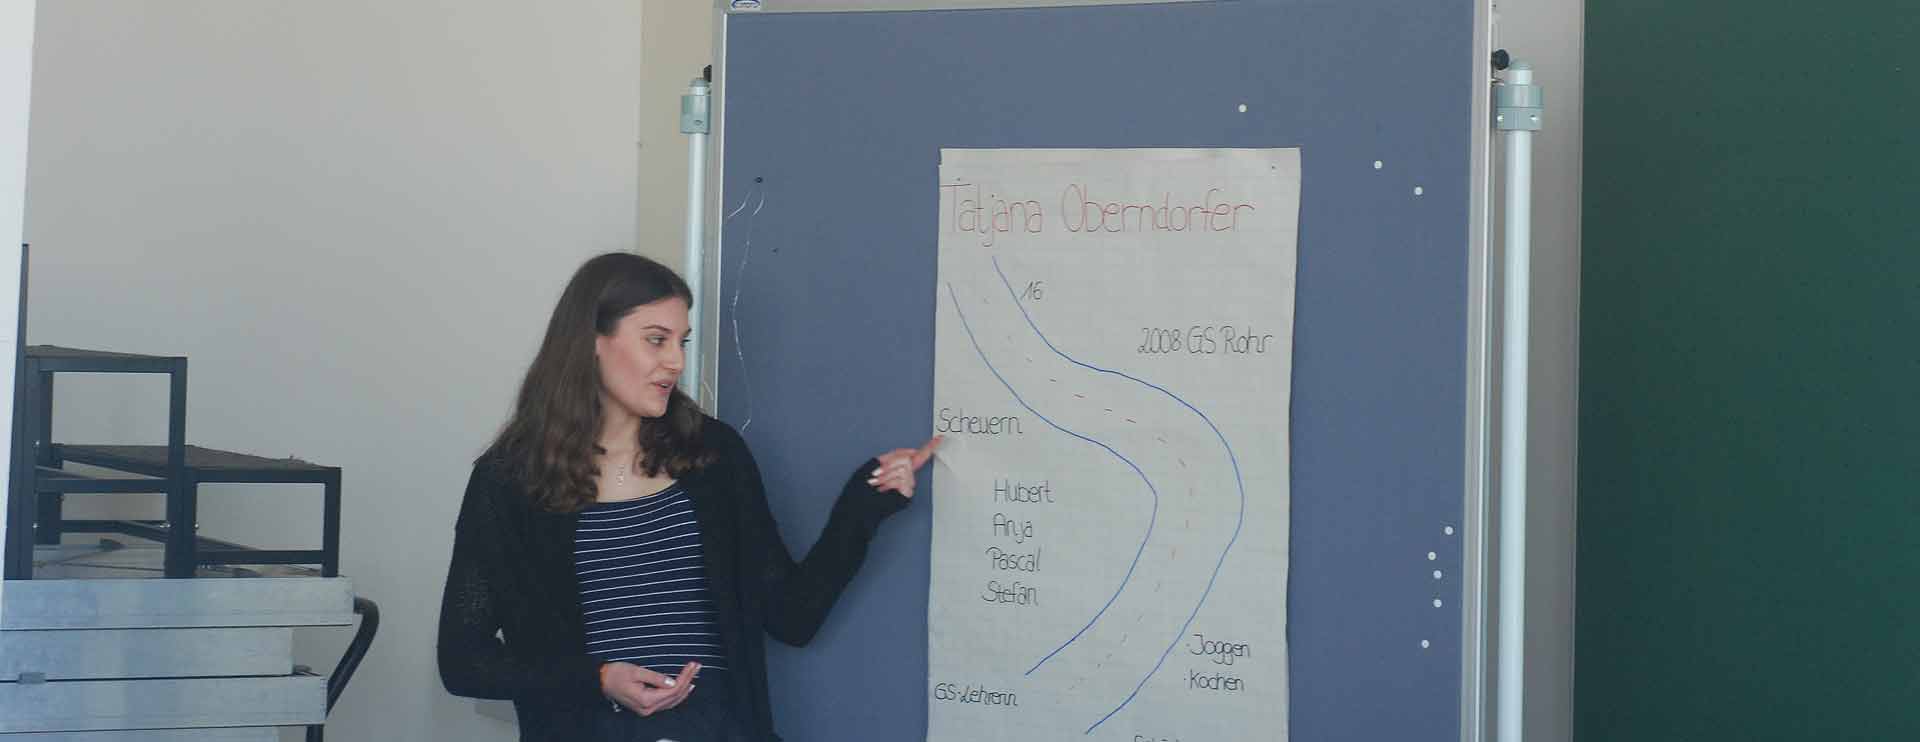 Schülerin Tatjana Oberndorfer präsentiert das Gruppenplakat unter Einhaltung bestimmter Regeln. (Foto: Florian Pollich)